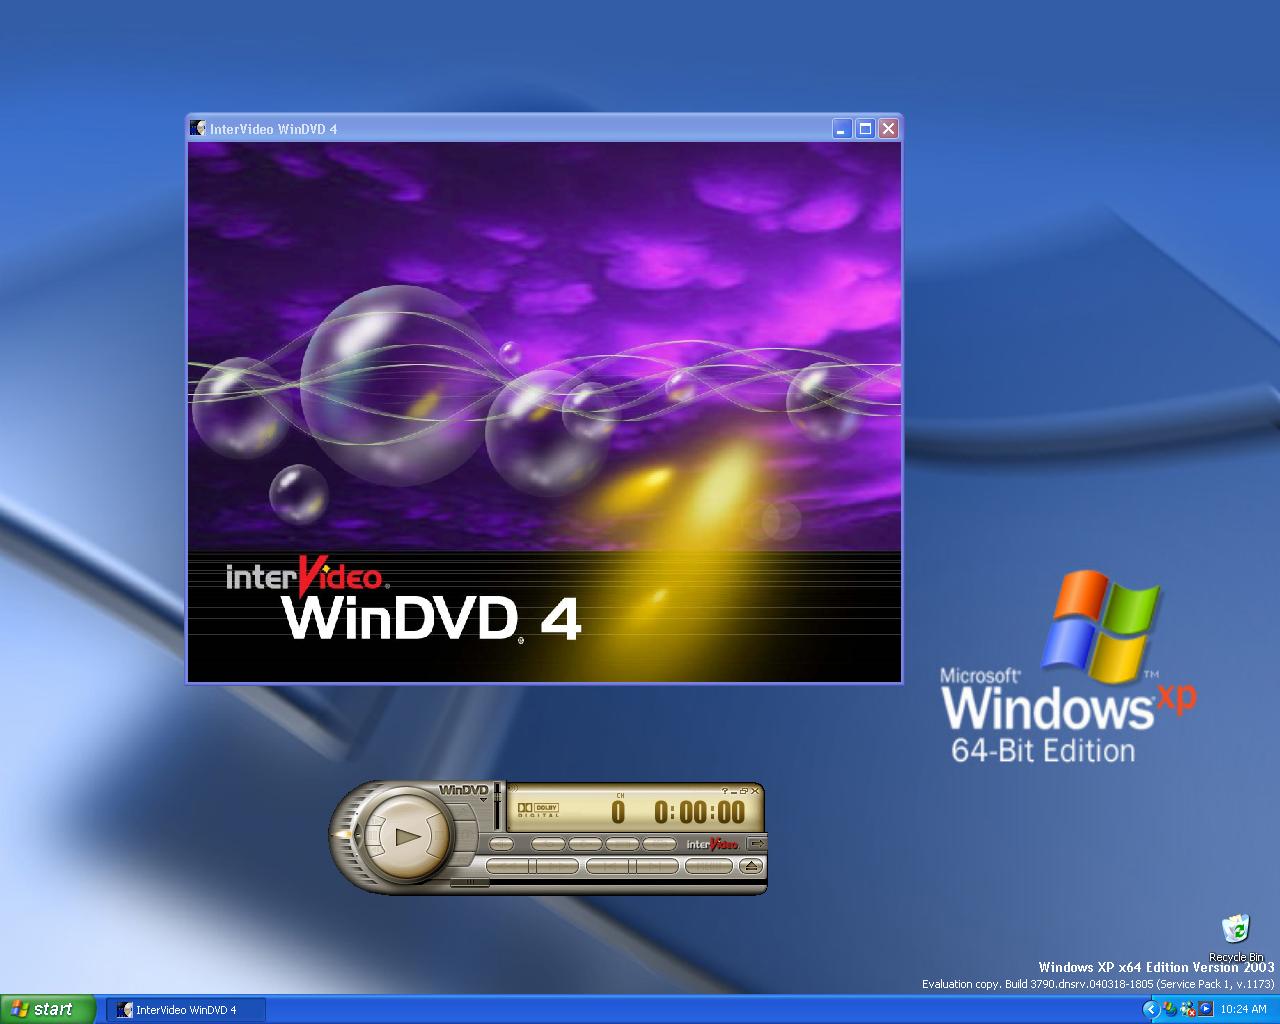 windows 7 ultimate sp2 64 bit iso torrent download